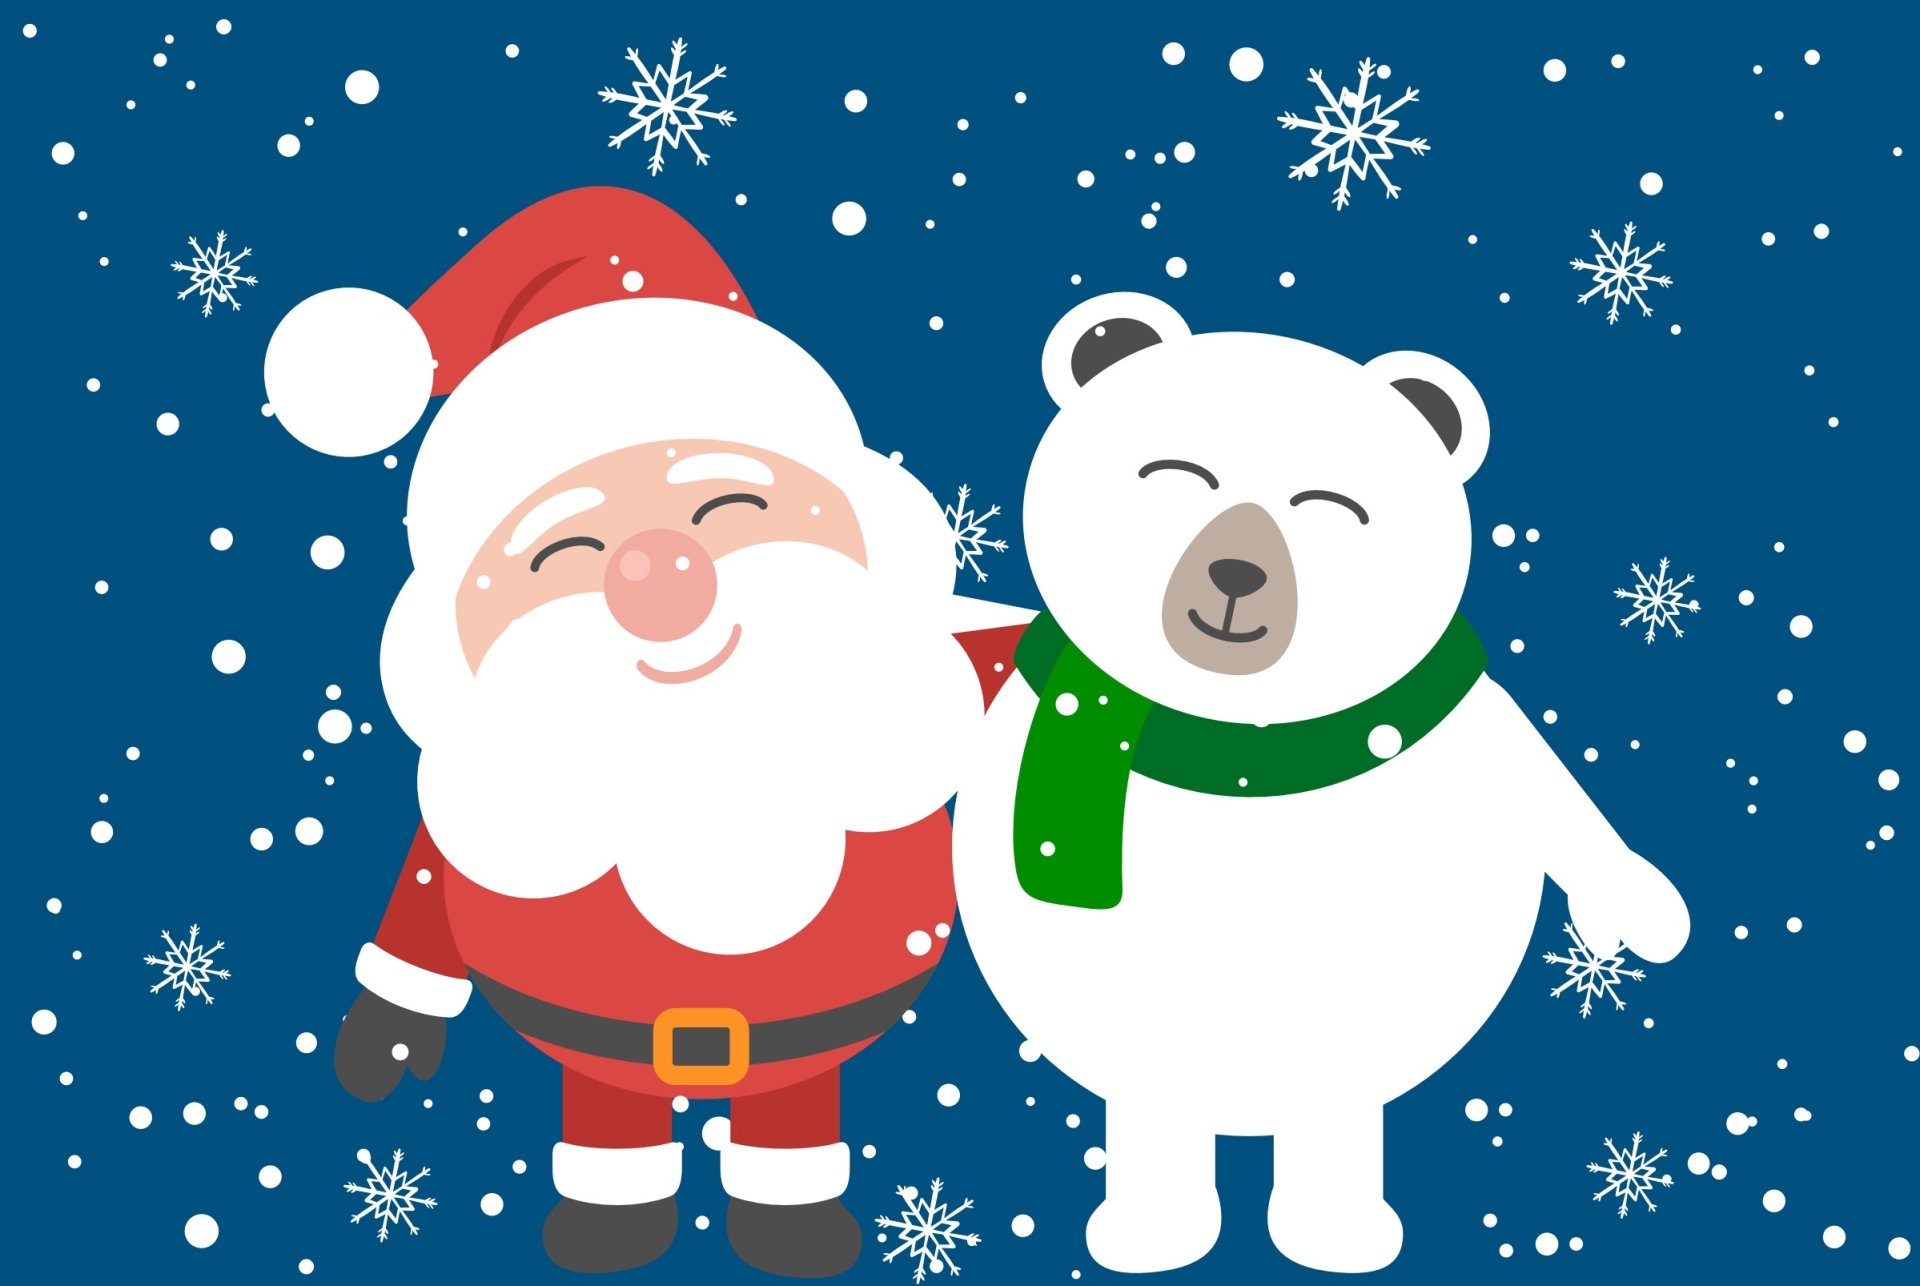 Santa Claus sách tranh sẽ là món quà tuyệt vời cho các bé trong mùa Giáng Sinh. Bạn sẽ được hòa mình vào câu chuyện đầy màu sắc và hài hước của ông già Noel để có một kỳ nghỉ Giáng Sinh thật ý nghĩa và đầy đủ nhất.